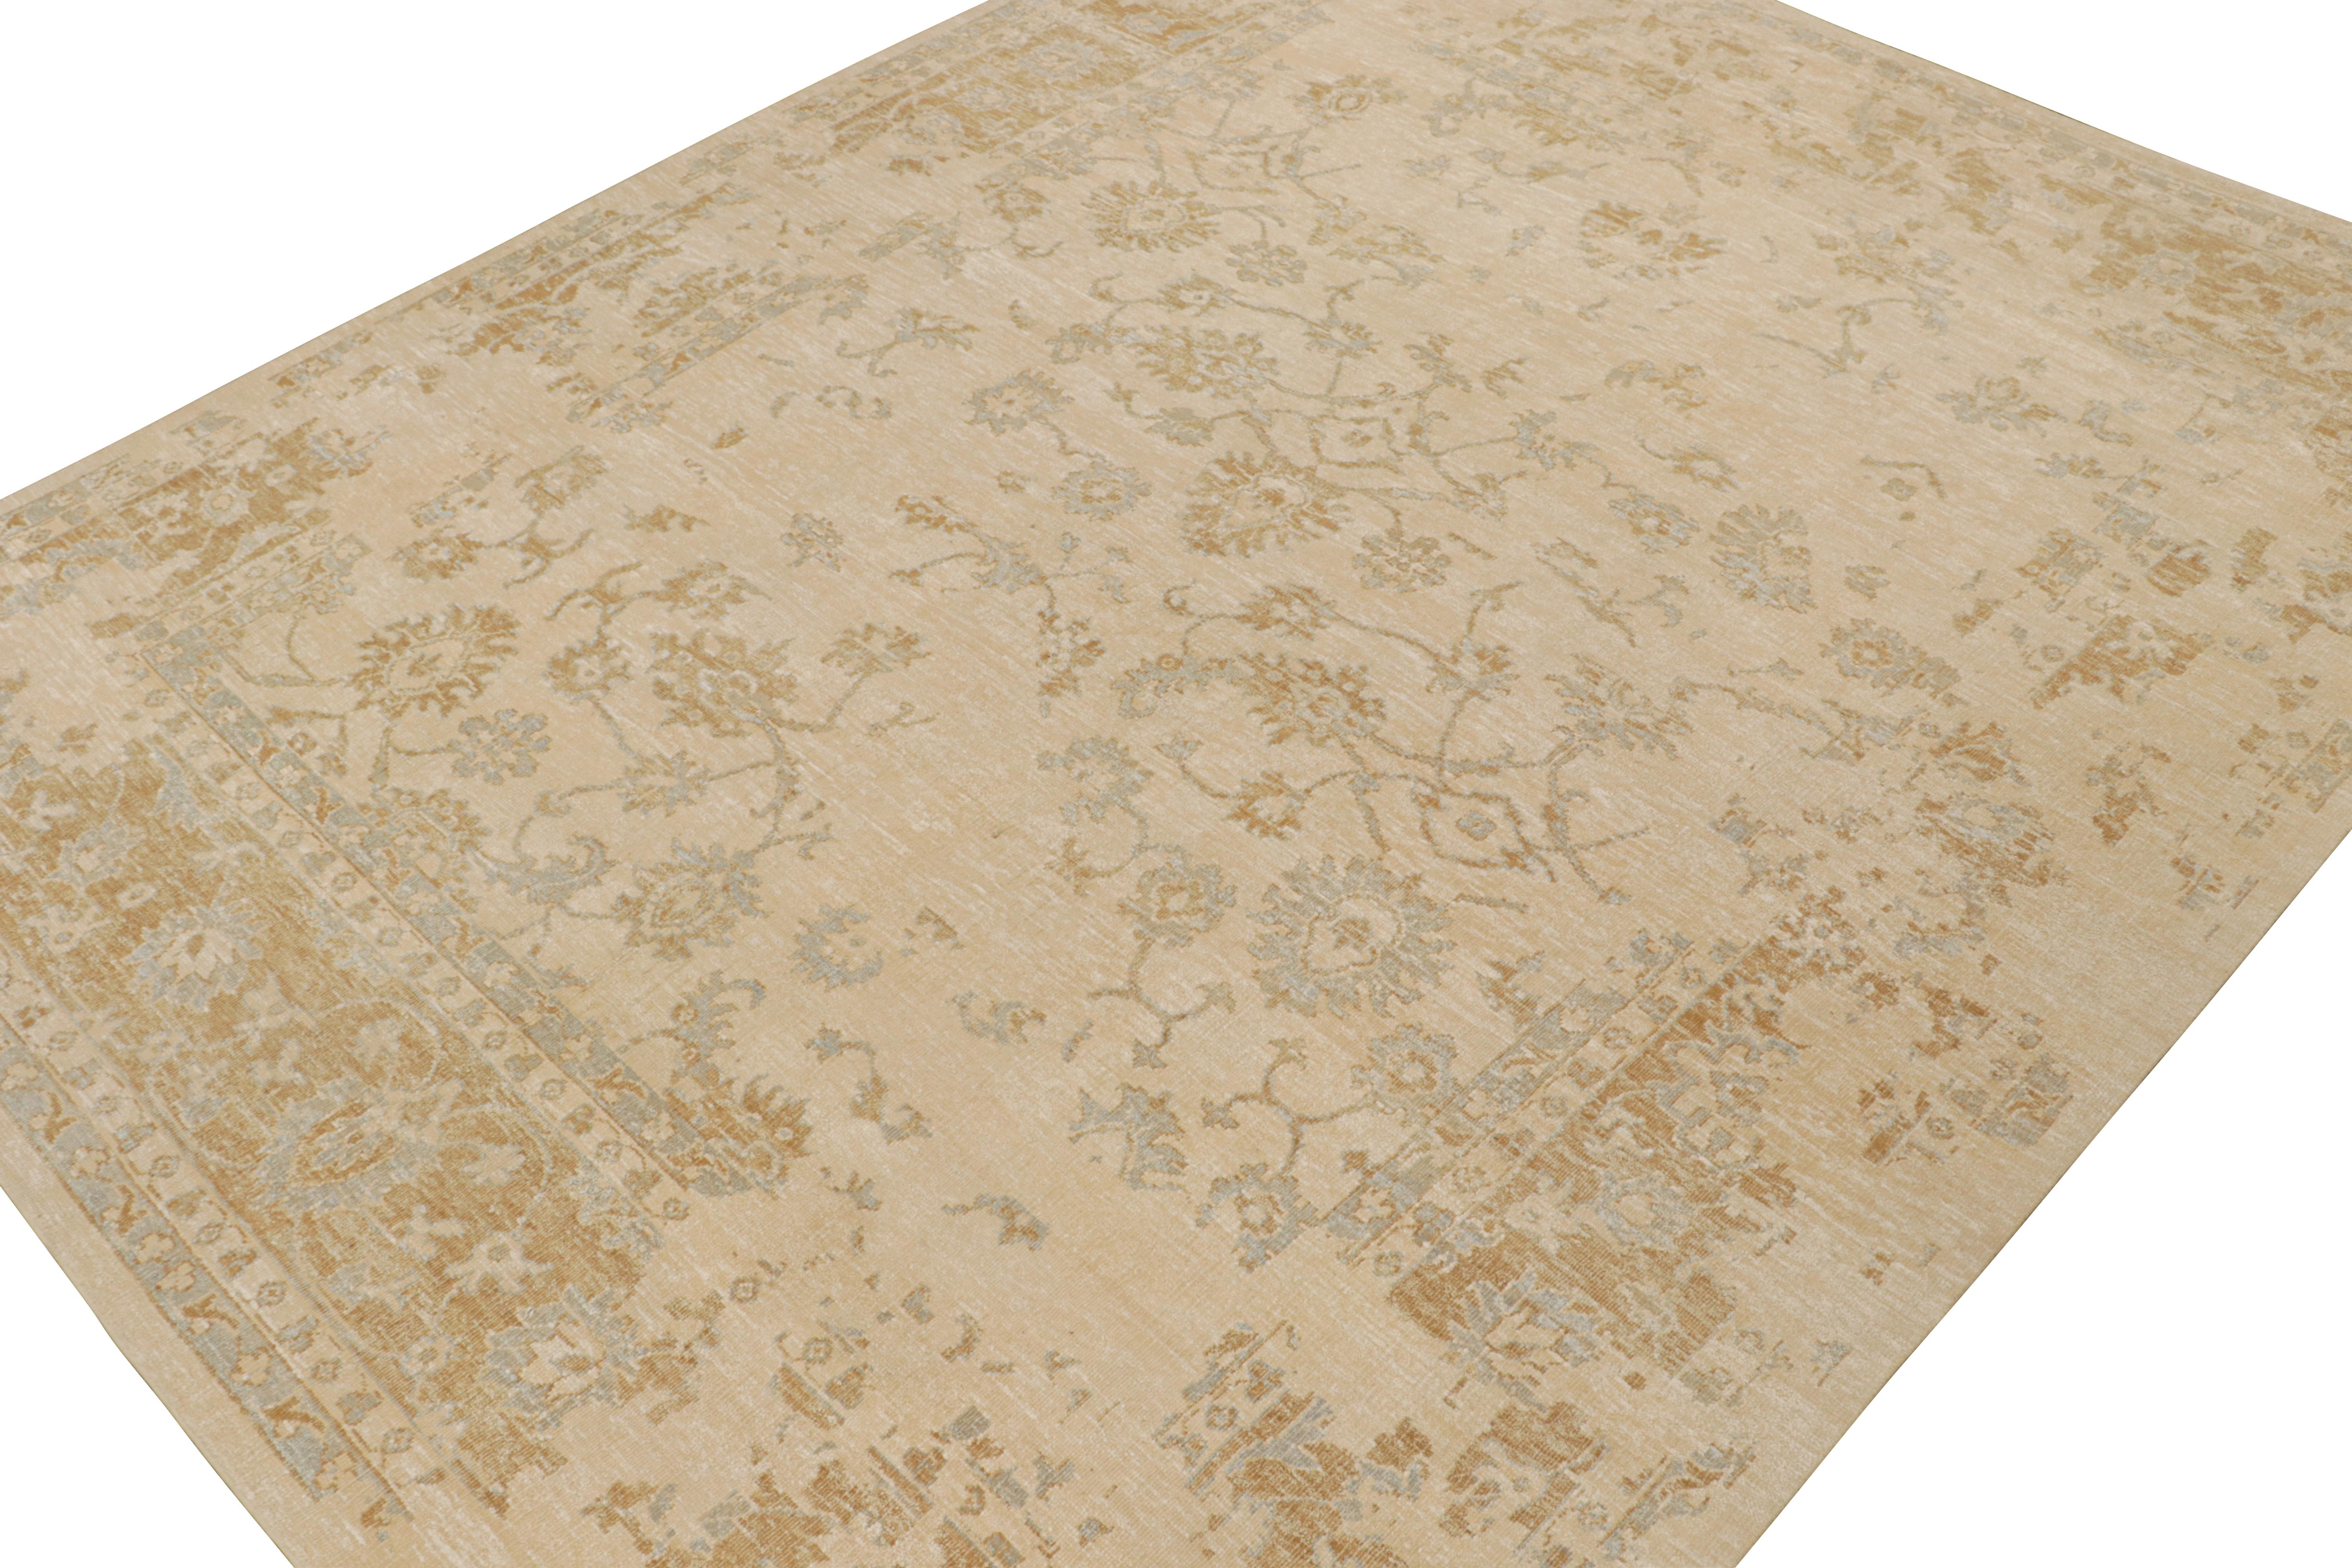 Ce tapis 12x15 s'inspire des anciens tapis Oushak et fait partie de la nouvelle collection audacieuse Modern Classics de Rug & Kilim. Noué à la main en soie, il présente des tons beige et crème avec des motifs floraux or rouille et bleu. 

Sur le